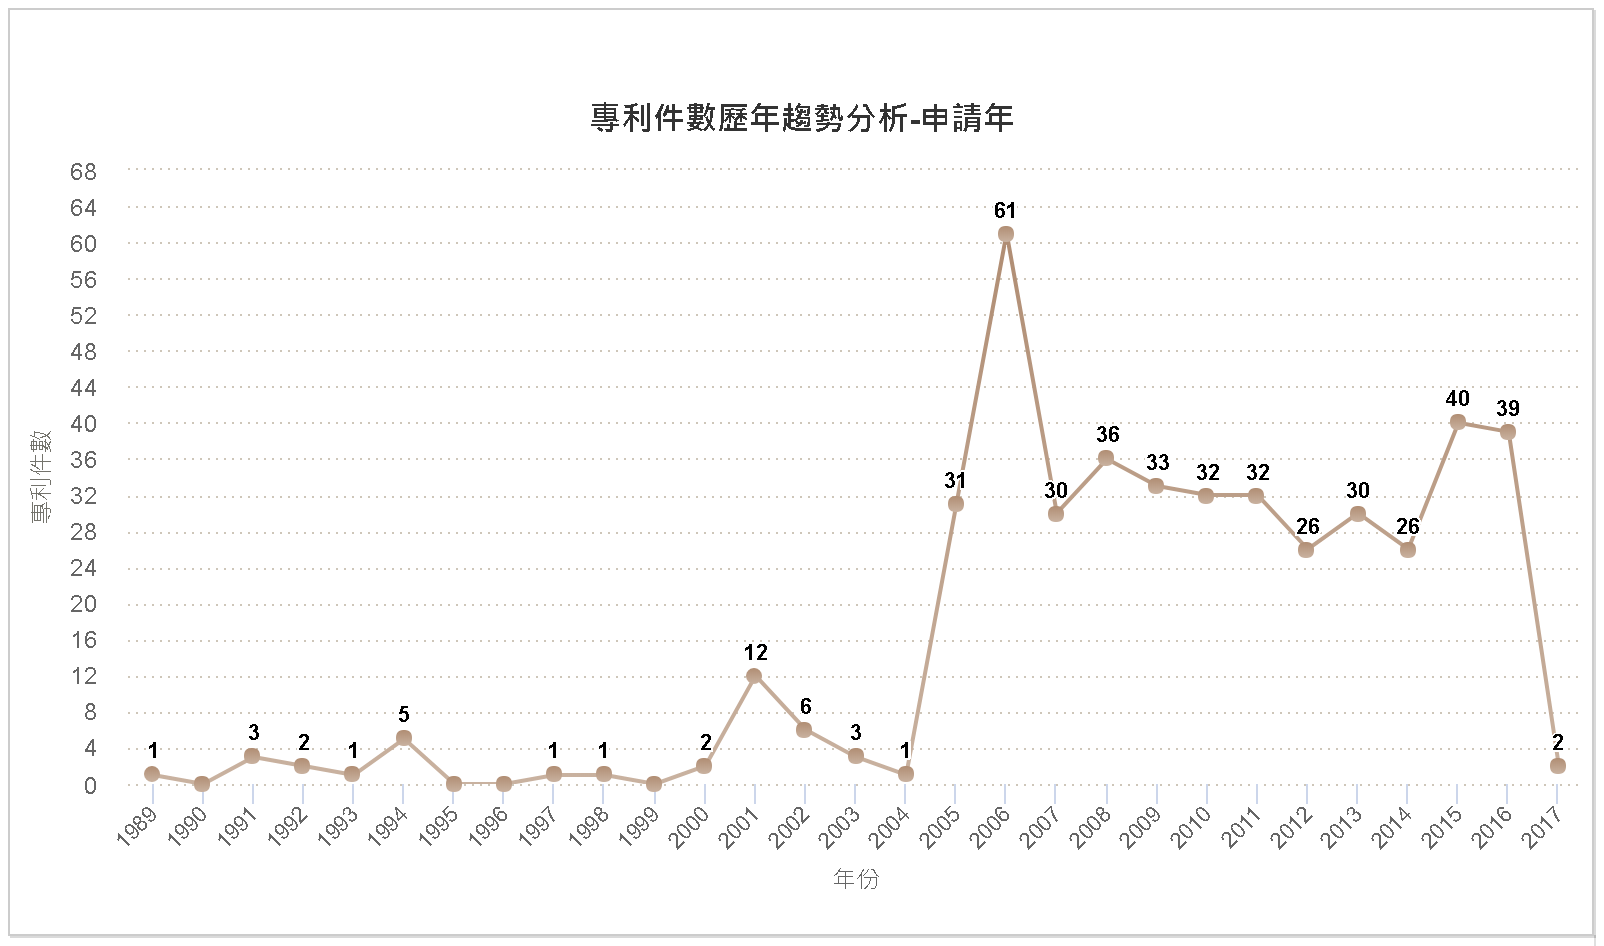 專利件數歷年趨勢分析圖–臺灣(申請年)